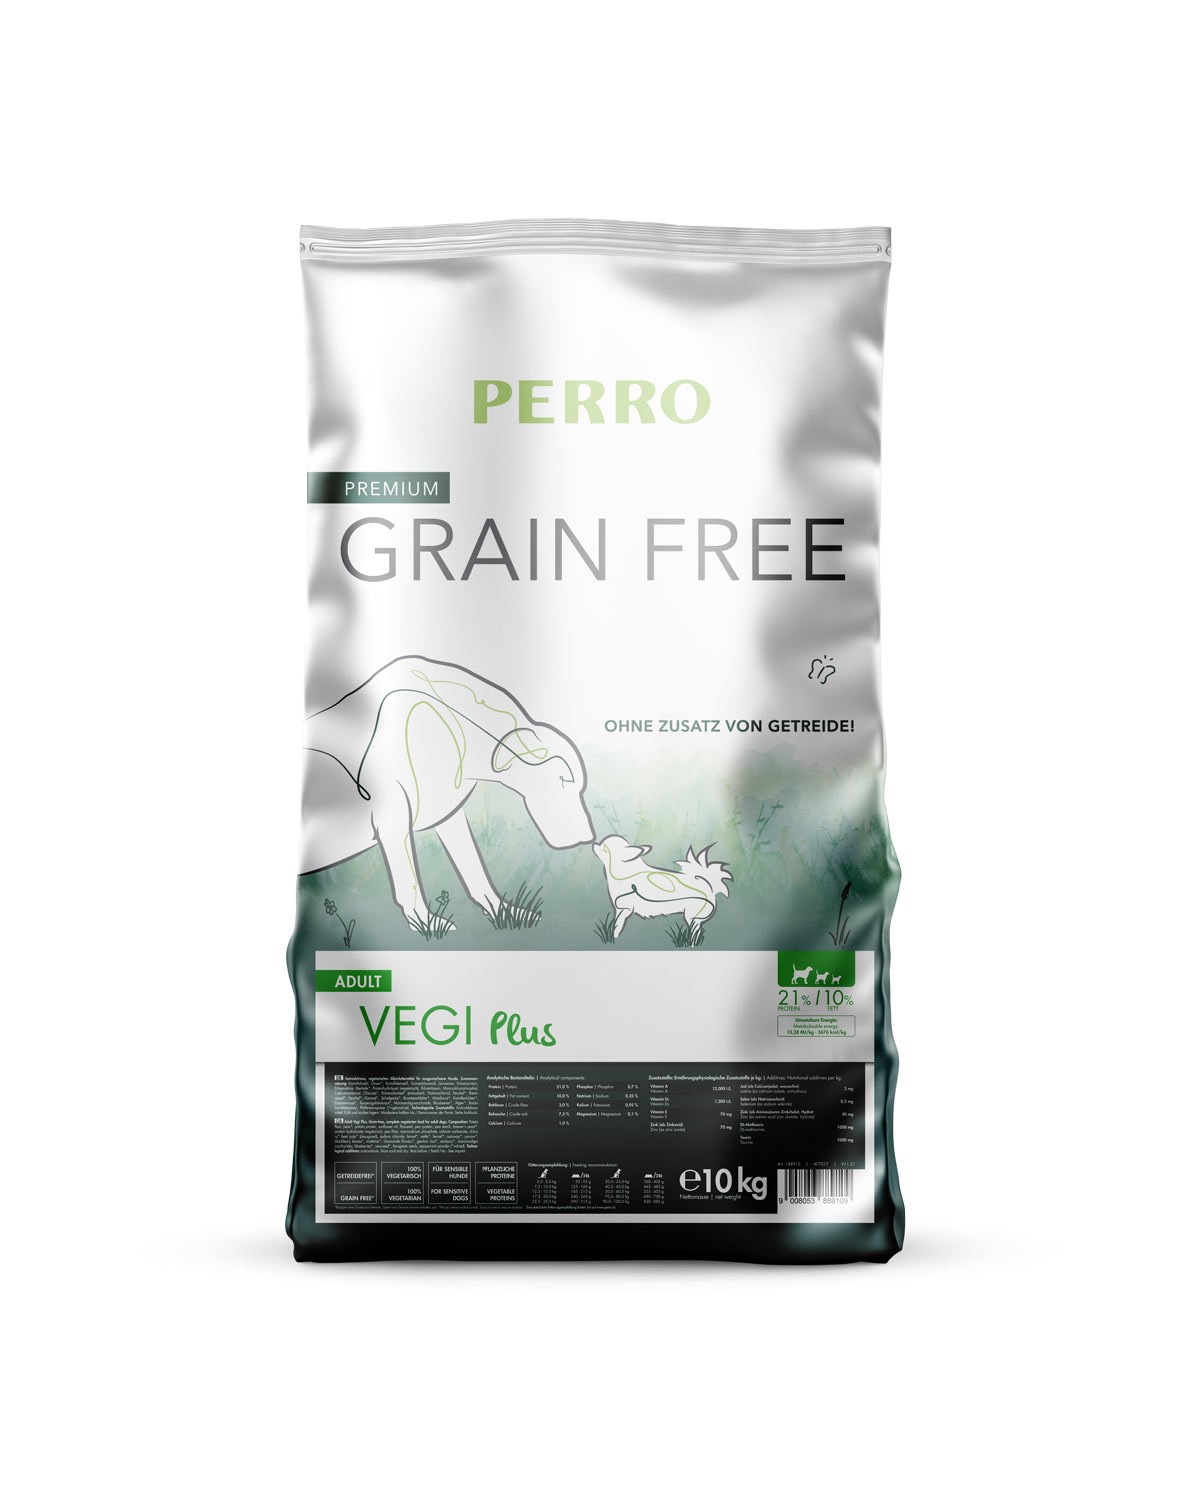 PERRO Grain Free Adult Vegi Plus